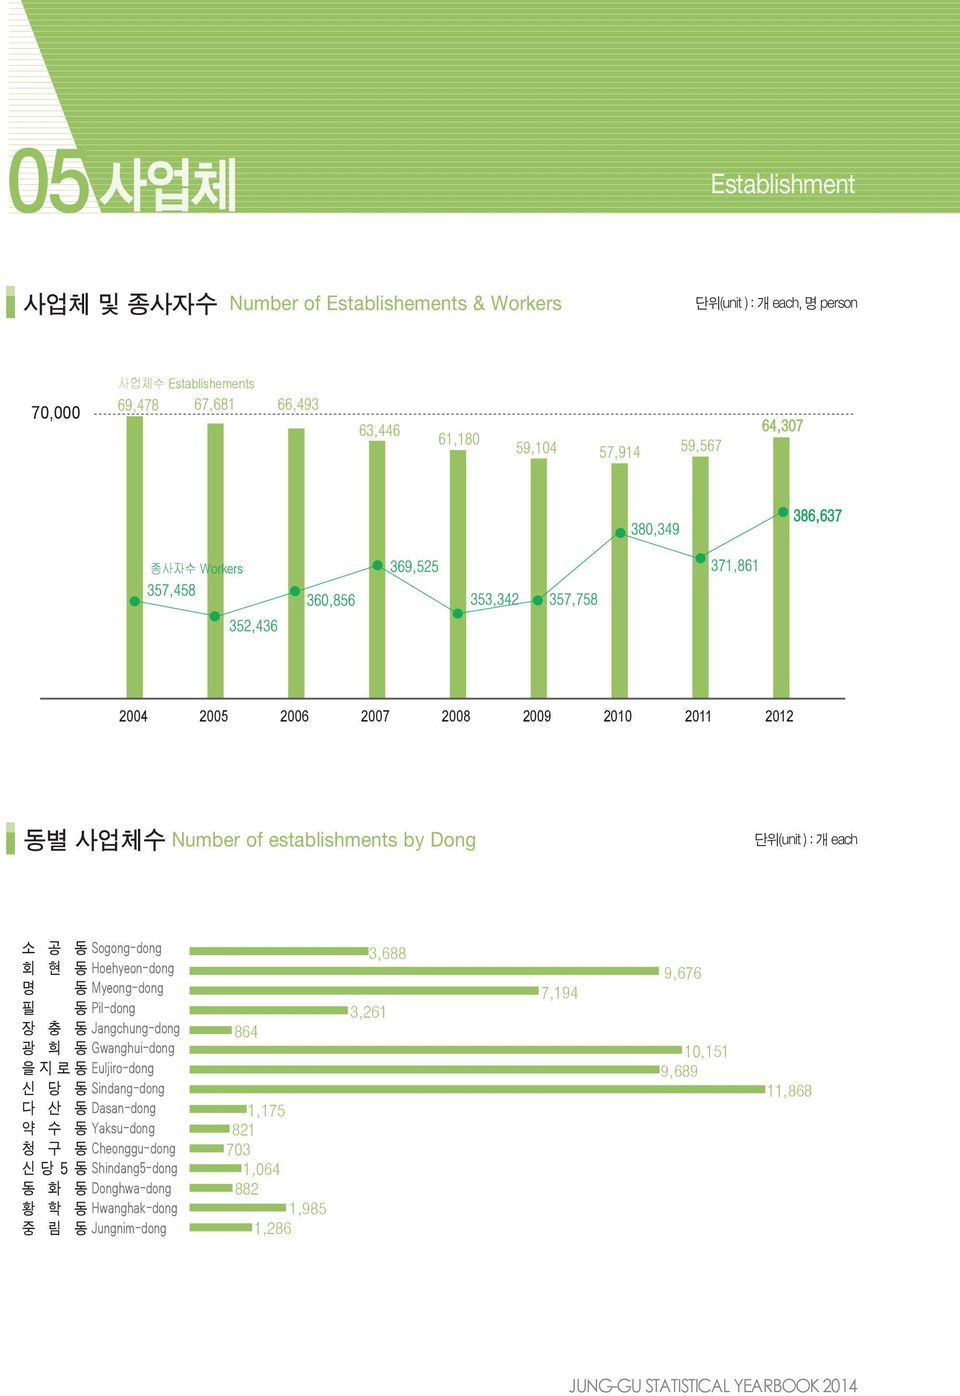 2012 동별 사업체수 Number of establishments by Dong 단위(unit ) : 개 each 864 1,175 821 703 1,064